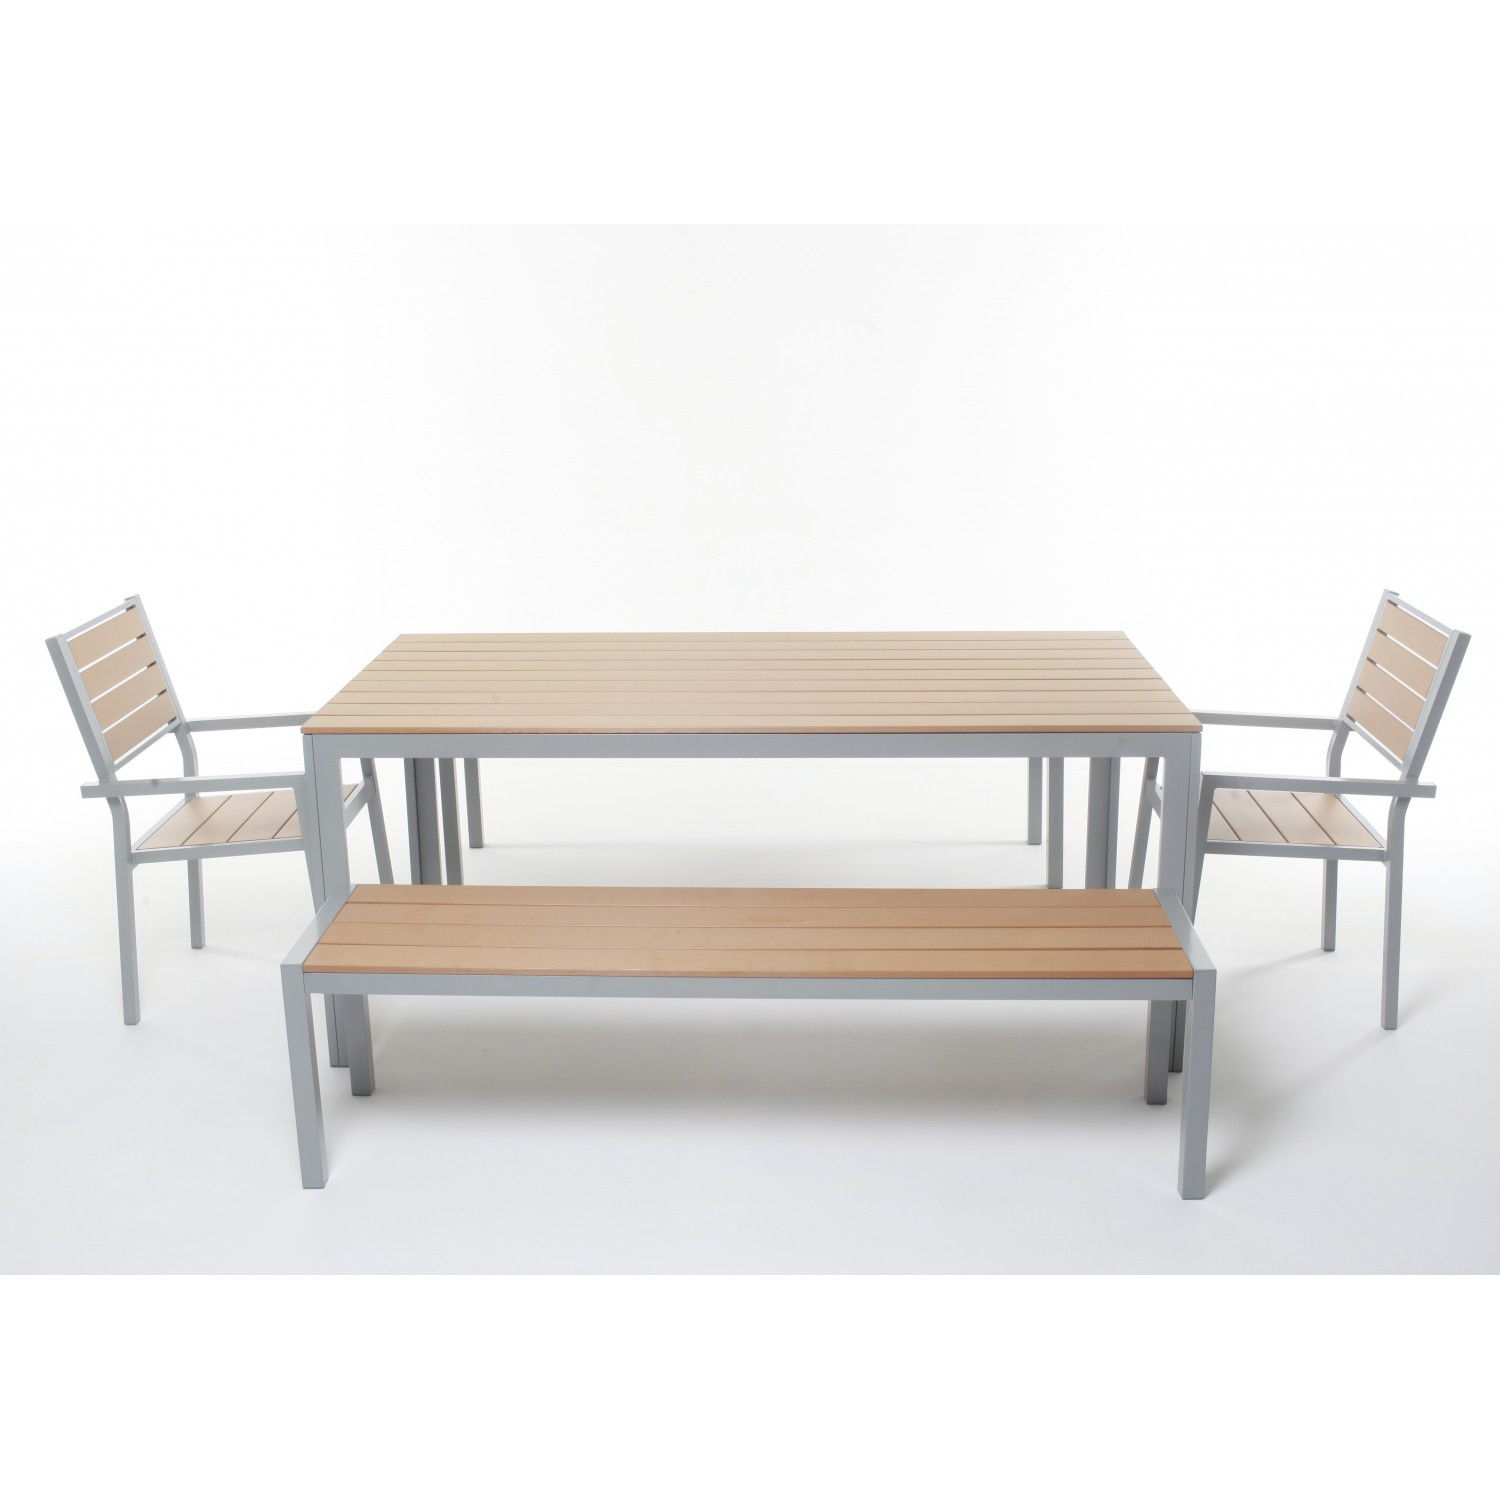  Tisch 180 cm + 2 Stühle + 2 Bänke, braun